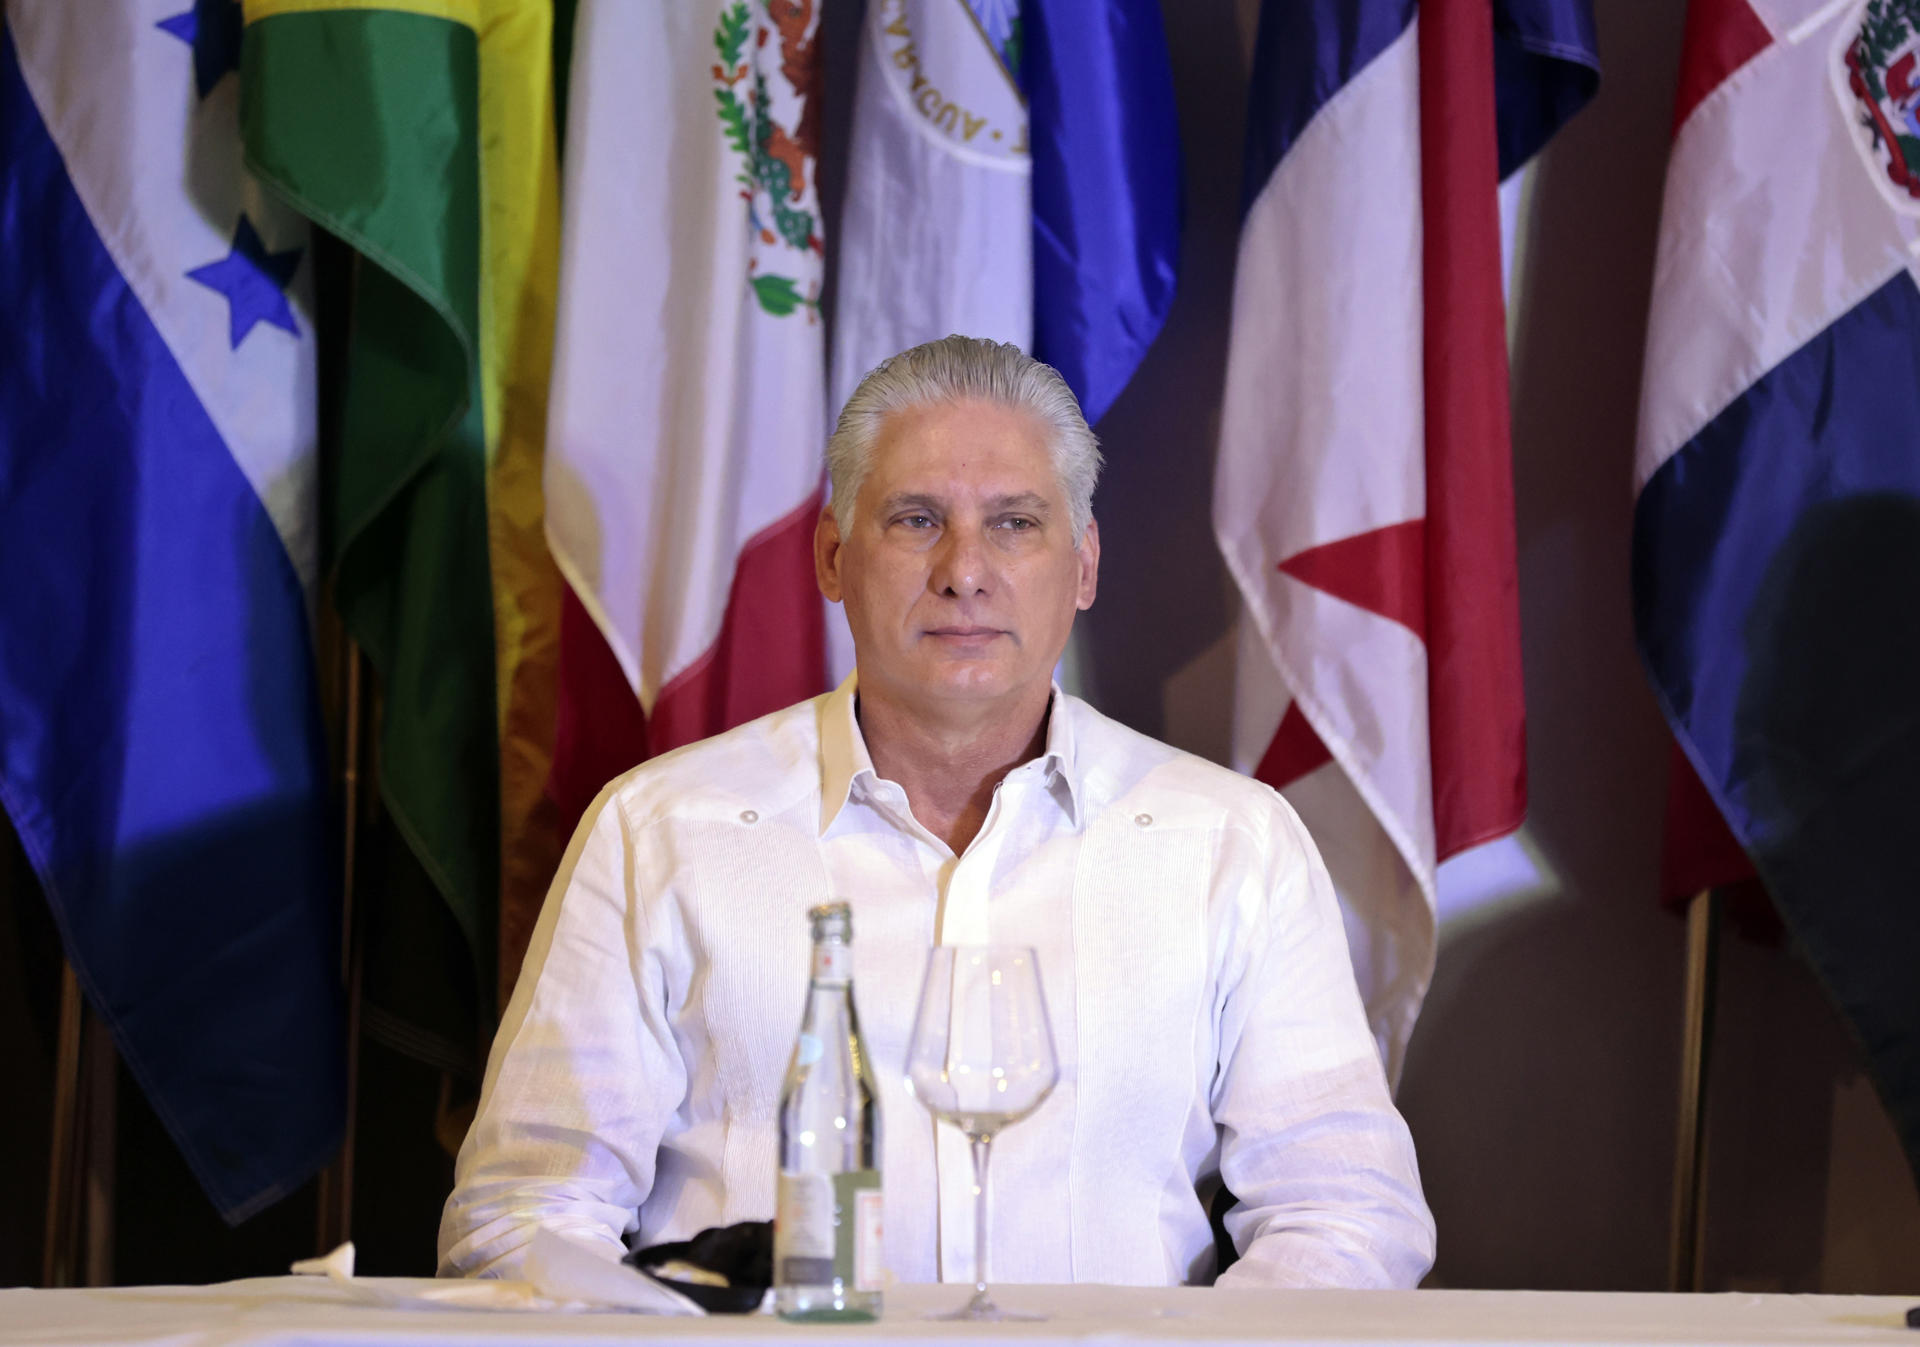 Díaz-Canel califica de "promisorios" los acuerdos entre el Gobierno de Colombia y el ELN